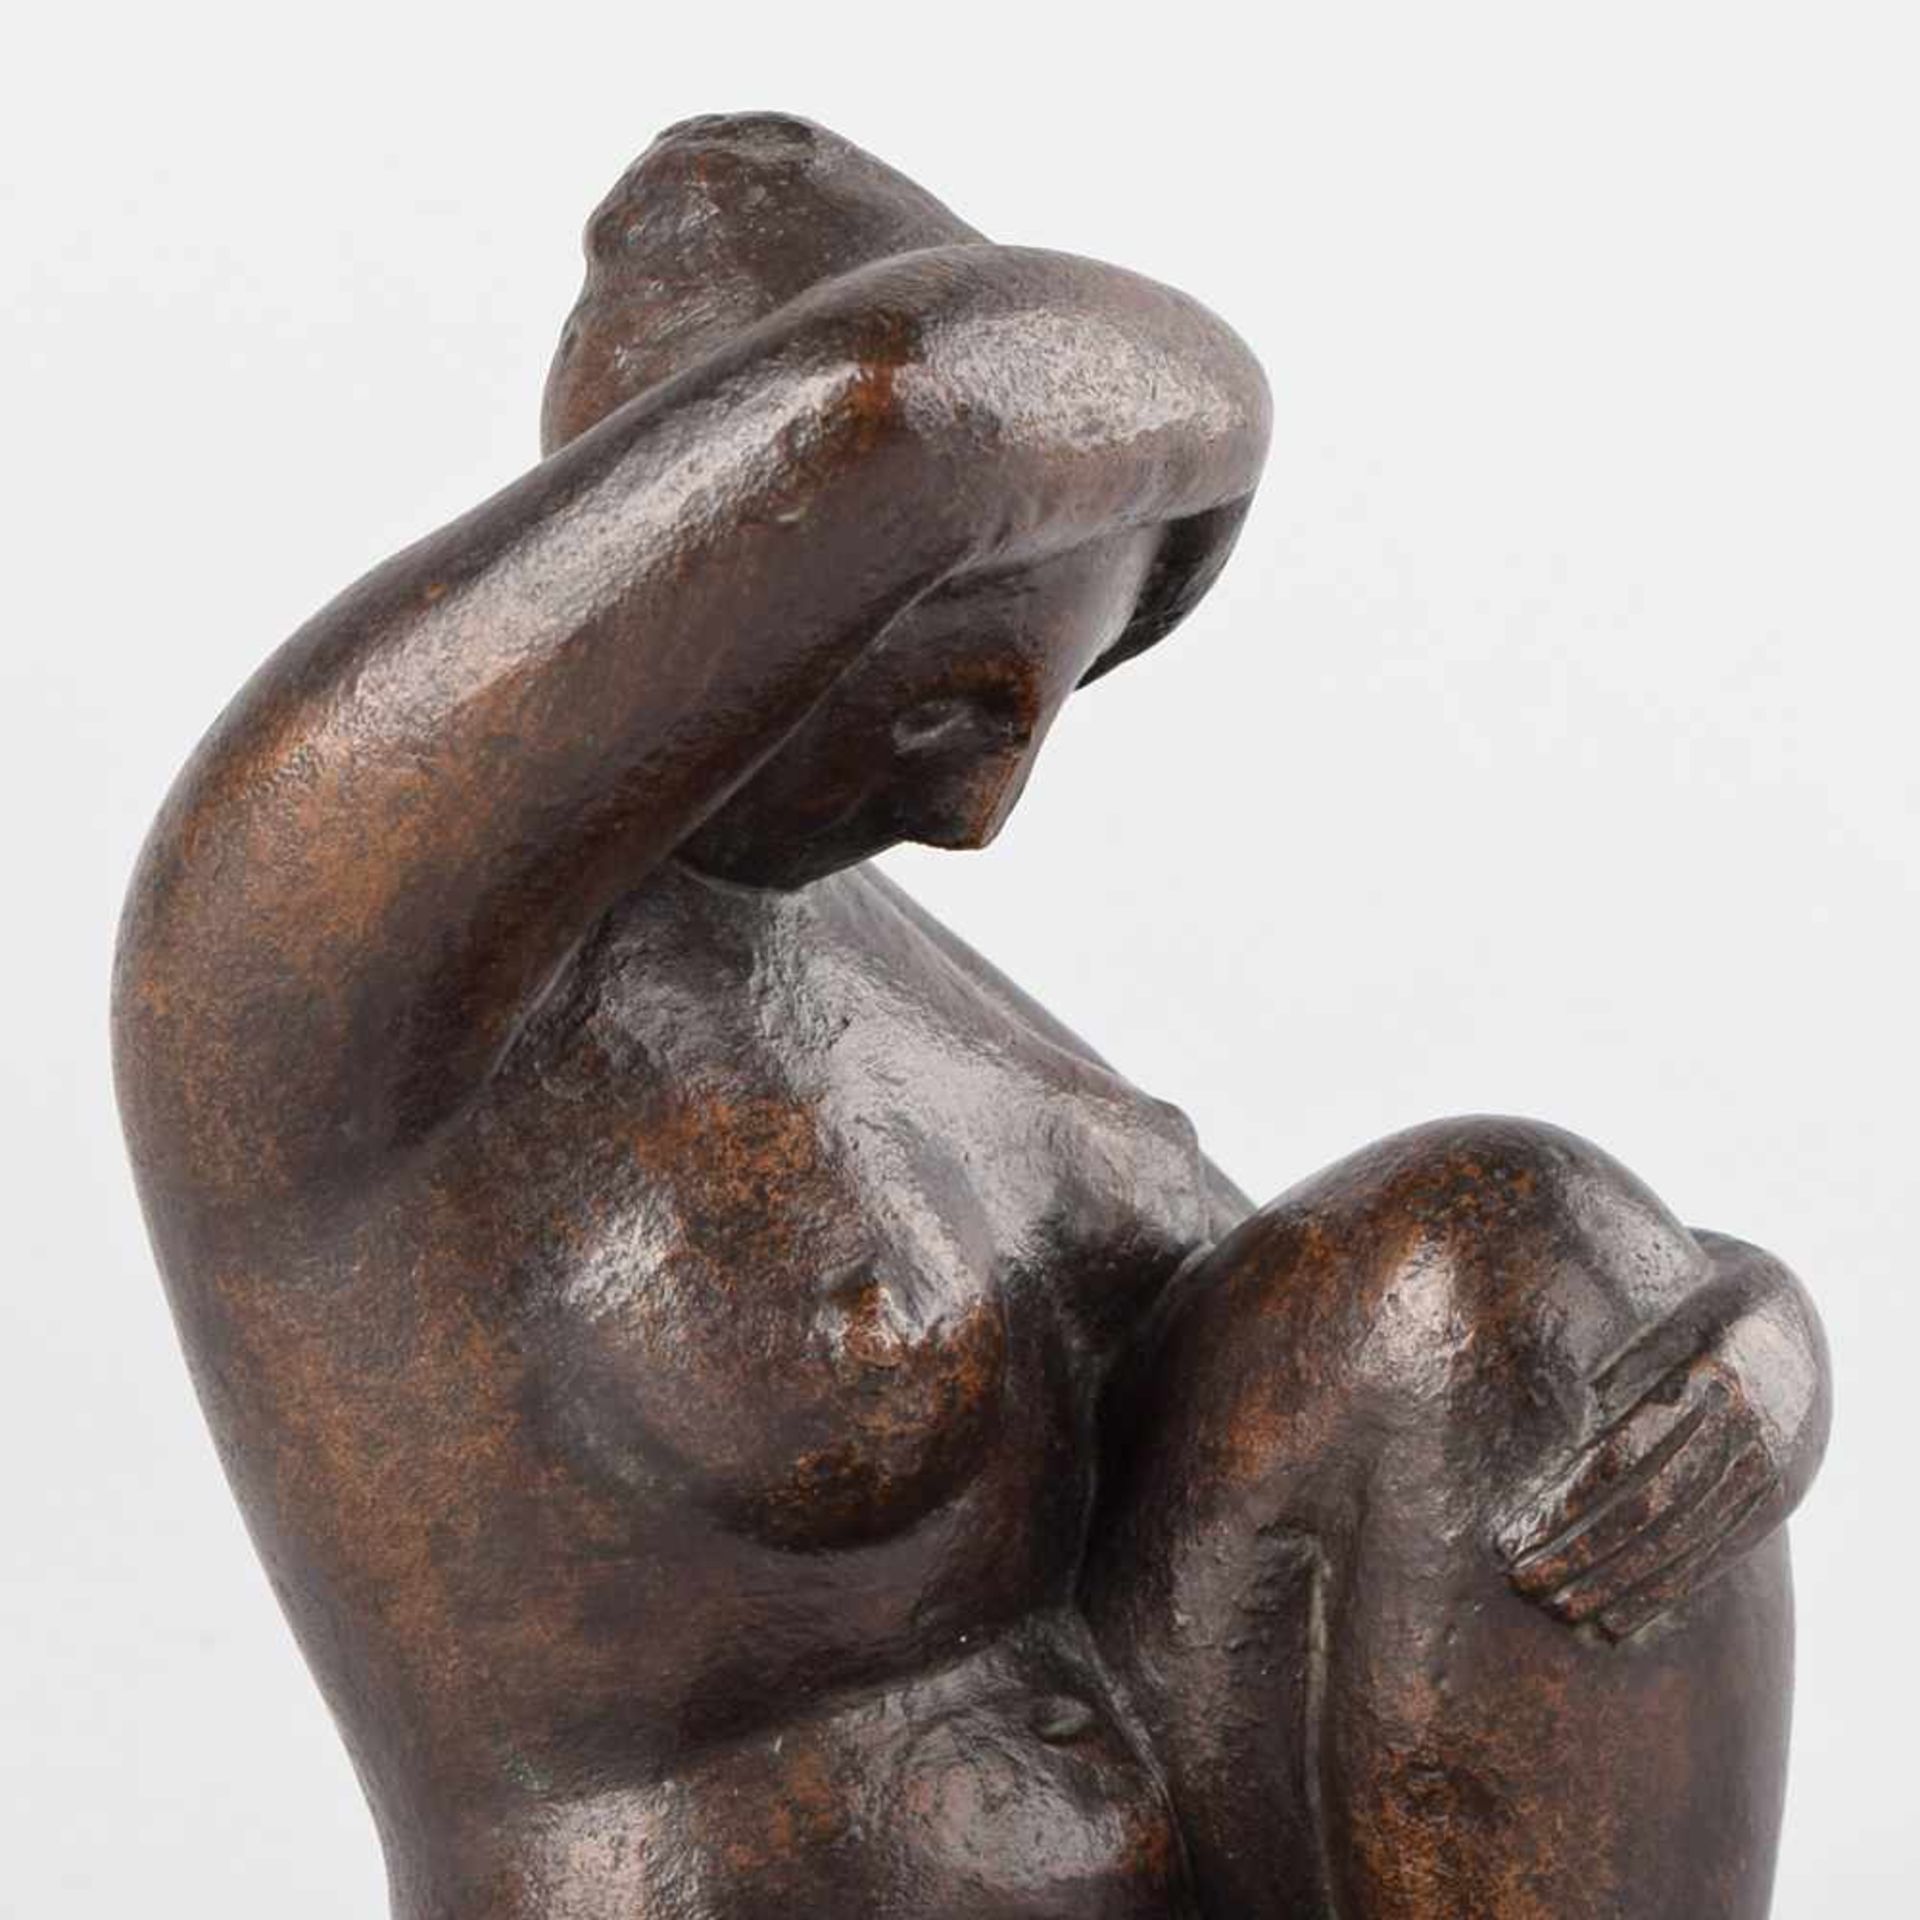 Unbekannt Bronze, dunkel patiniert, sitzender Damenakt, unten undeutlich monogrammiert, 1987 datiert - Bild 2 aus 4